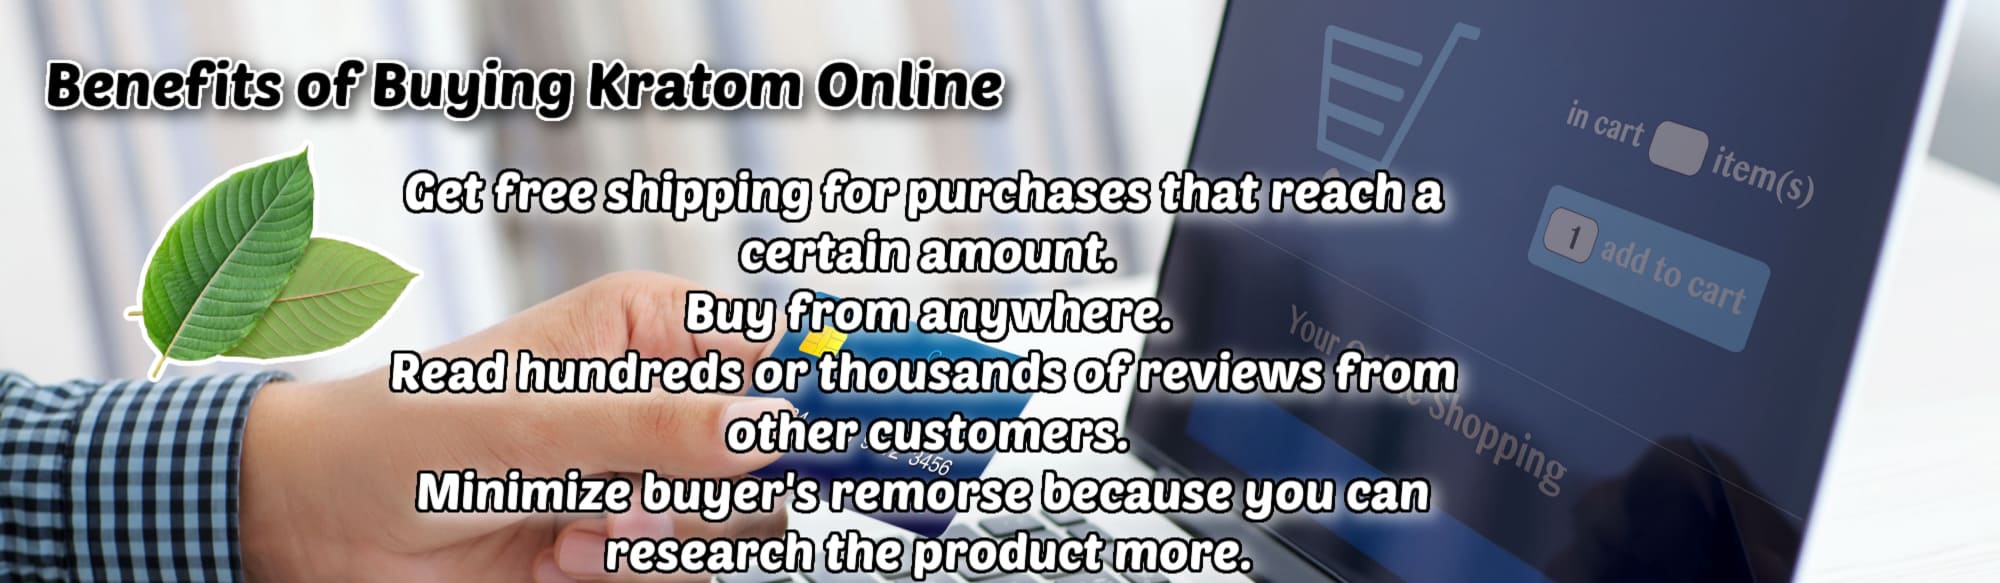 image of benefits of buying kratom online